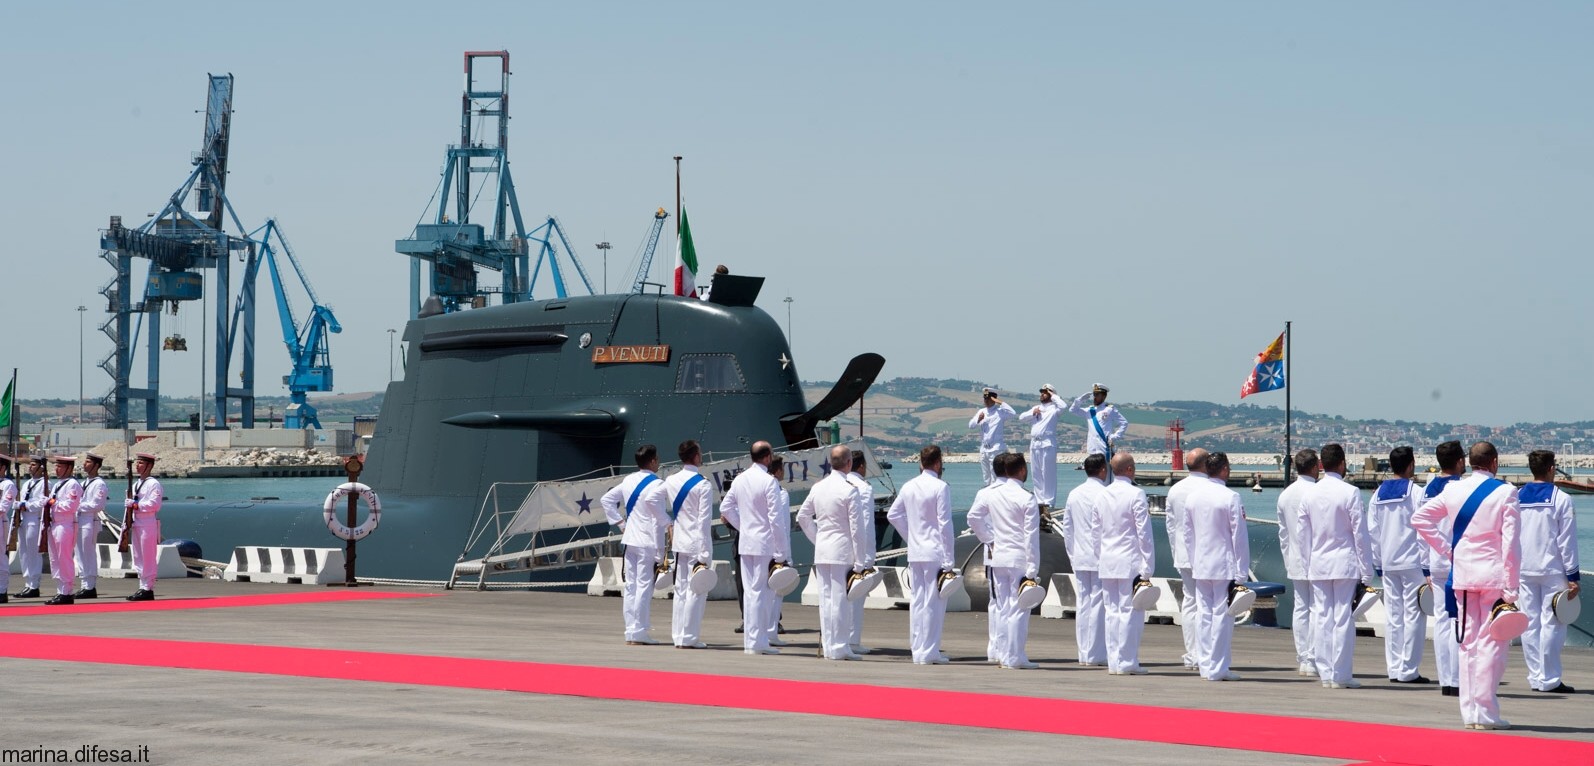 s-528 pietro venuti its smg todaro type 212 class submarine italian navy marina militare 09